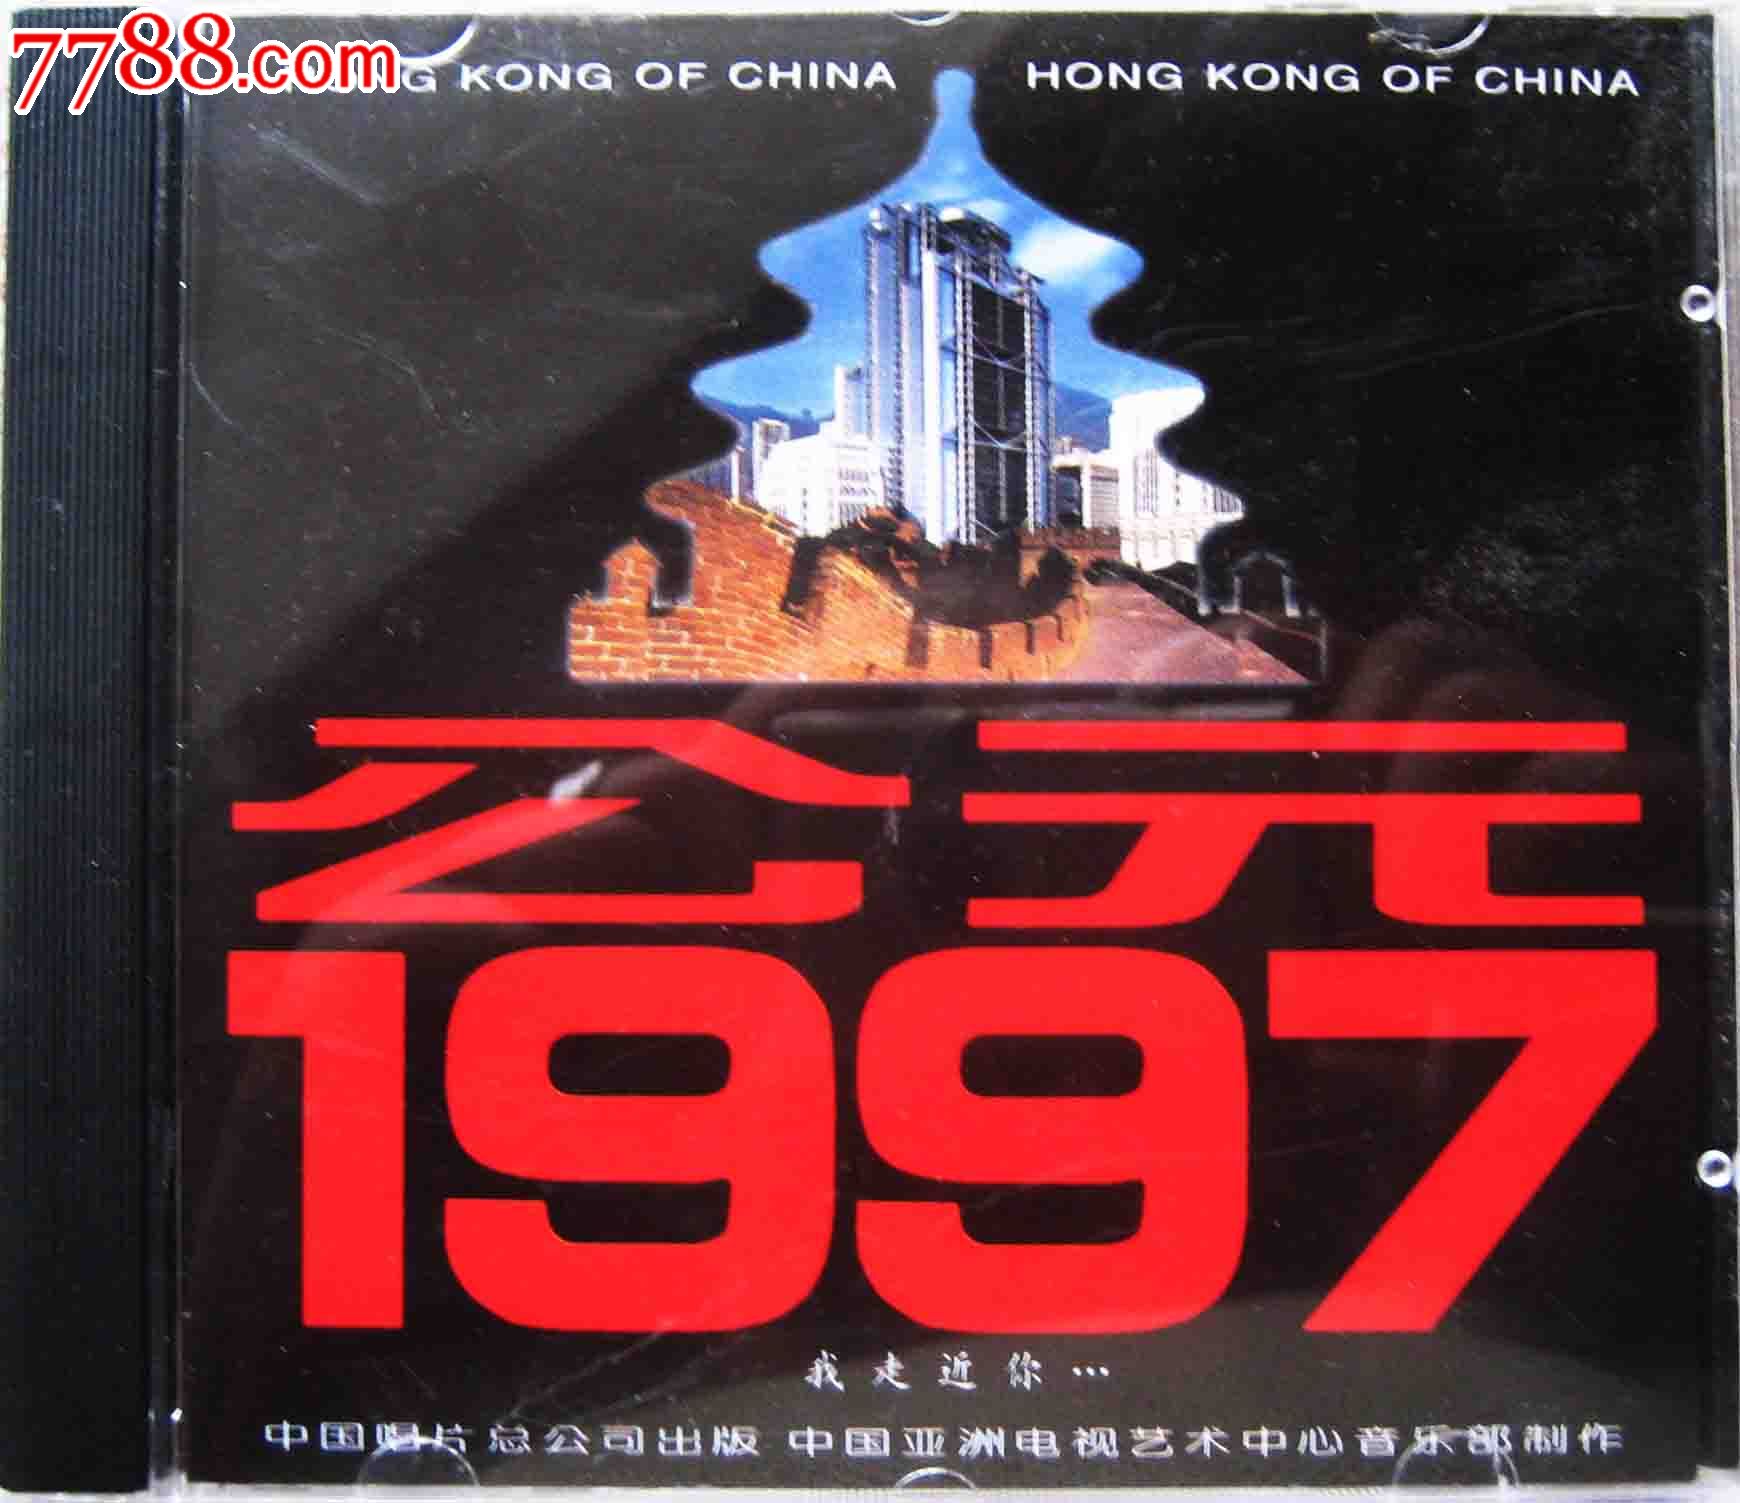 97中唱总公司CD歌曲合集:《公元1997》-